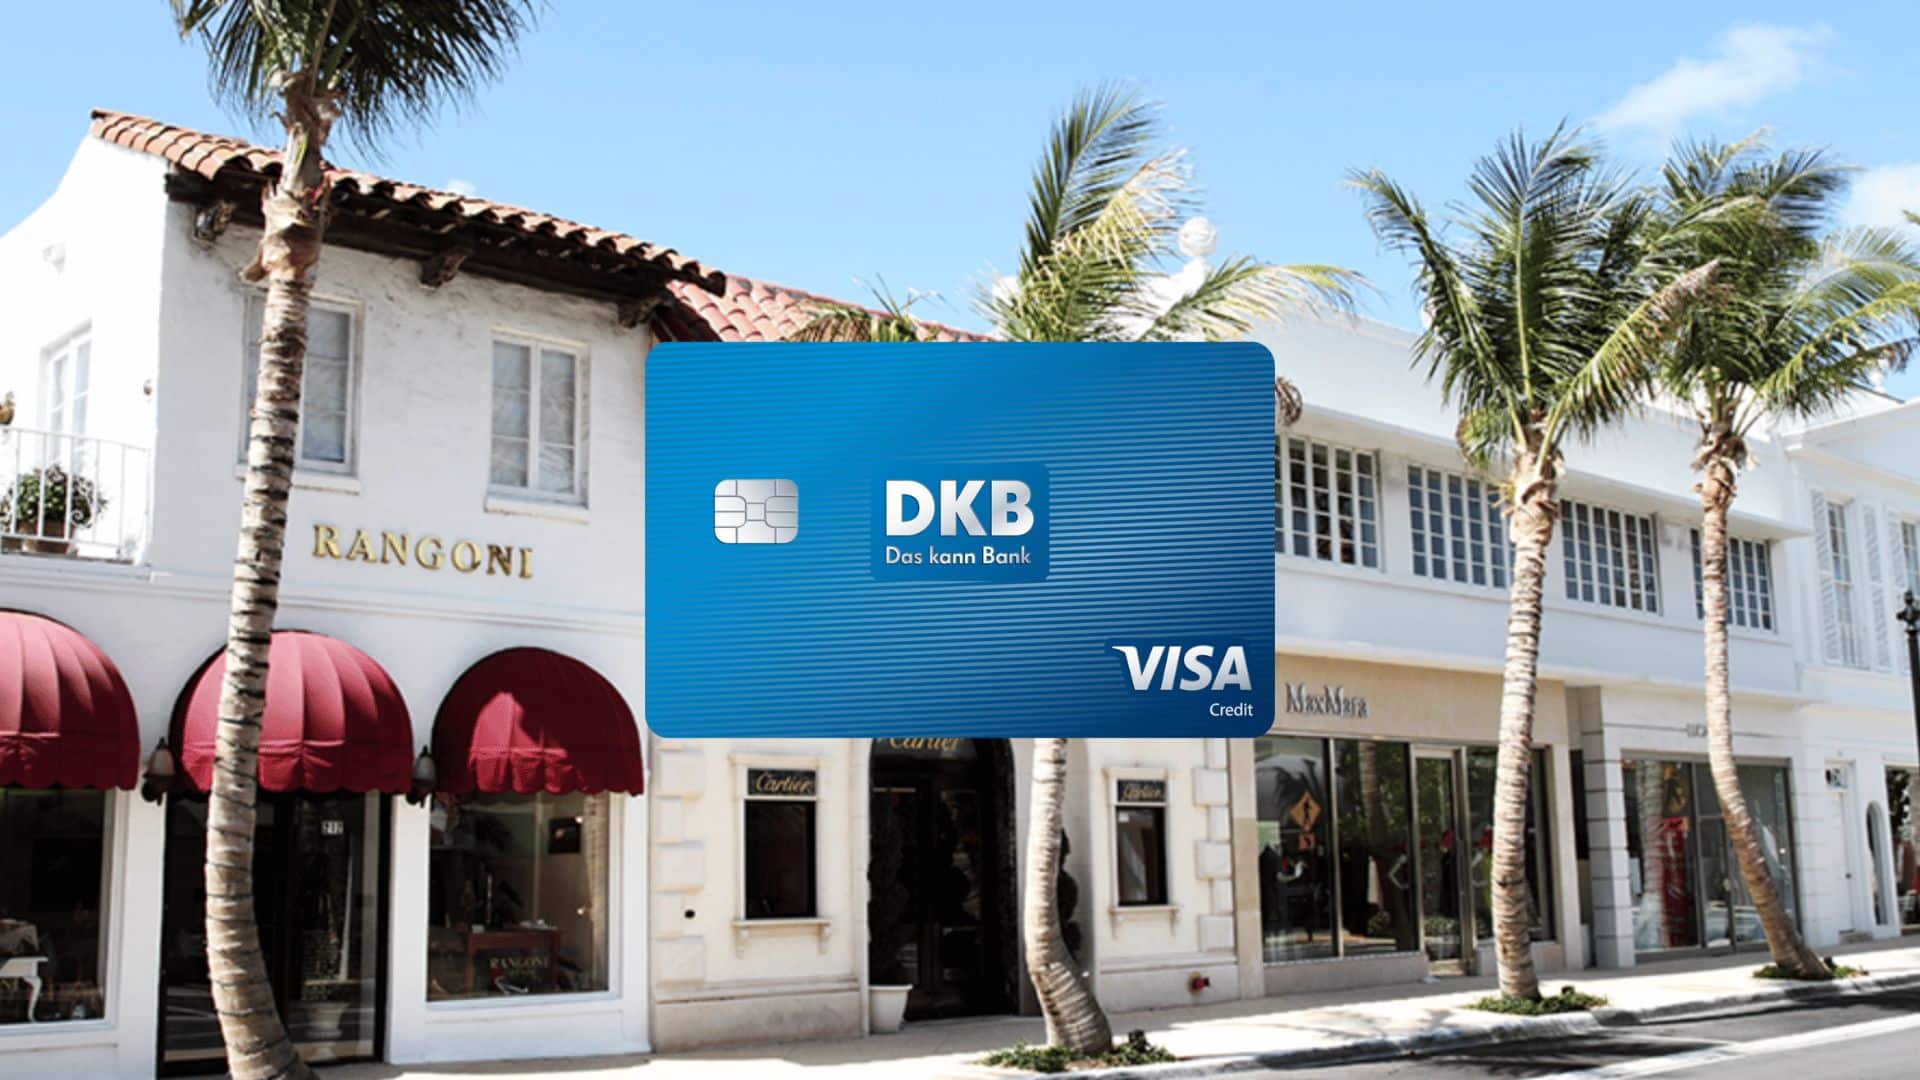 DKB Kreditkarte Shopping